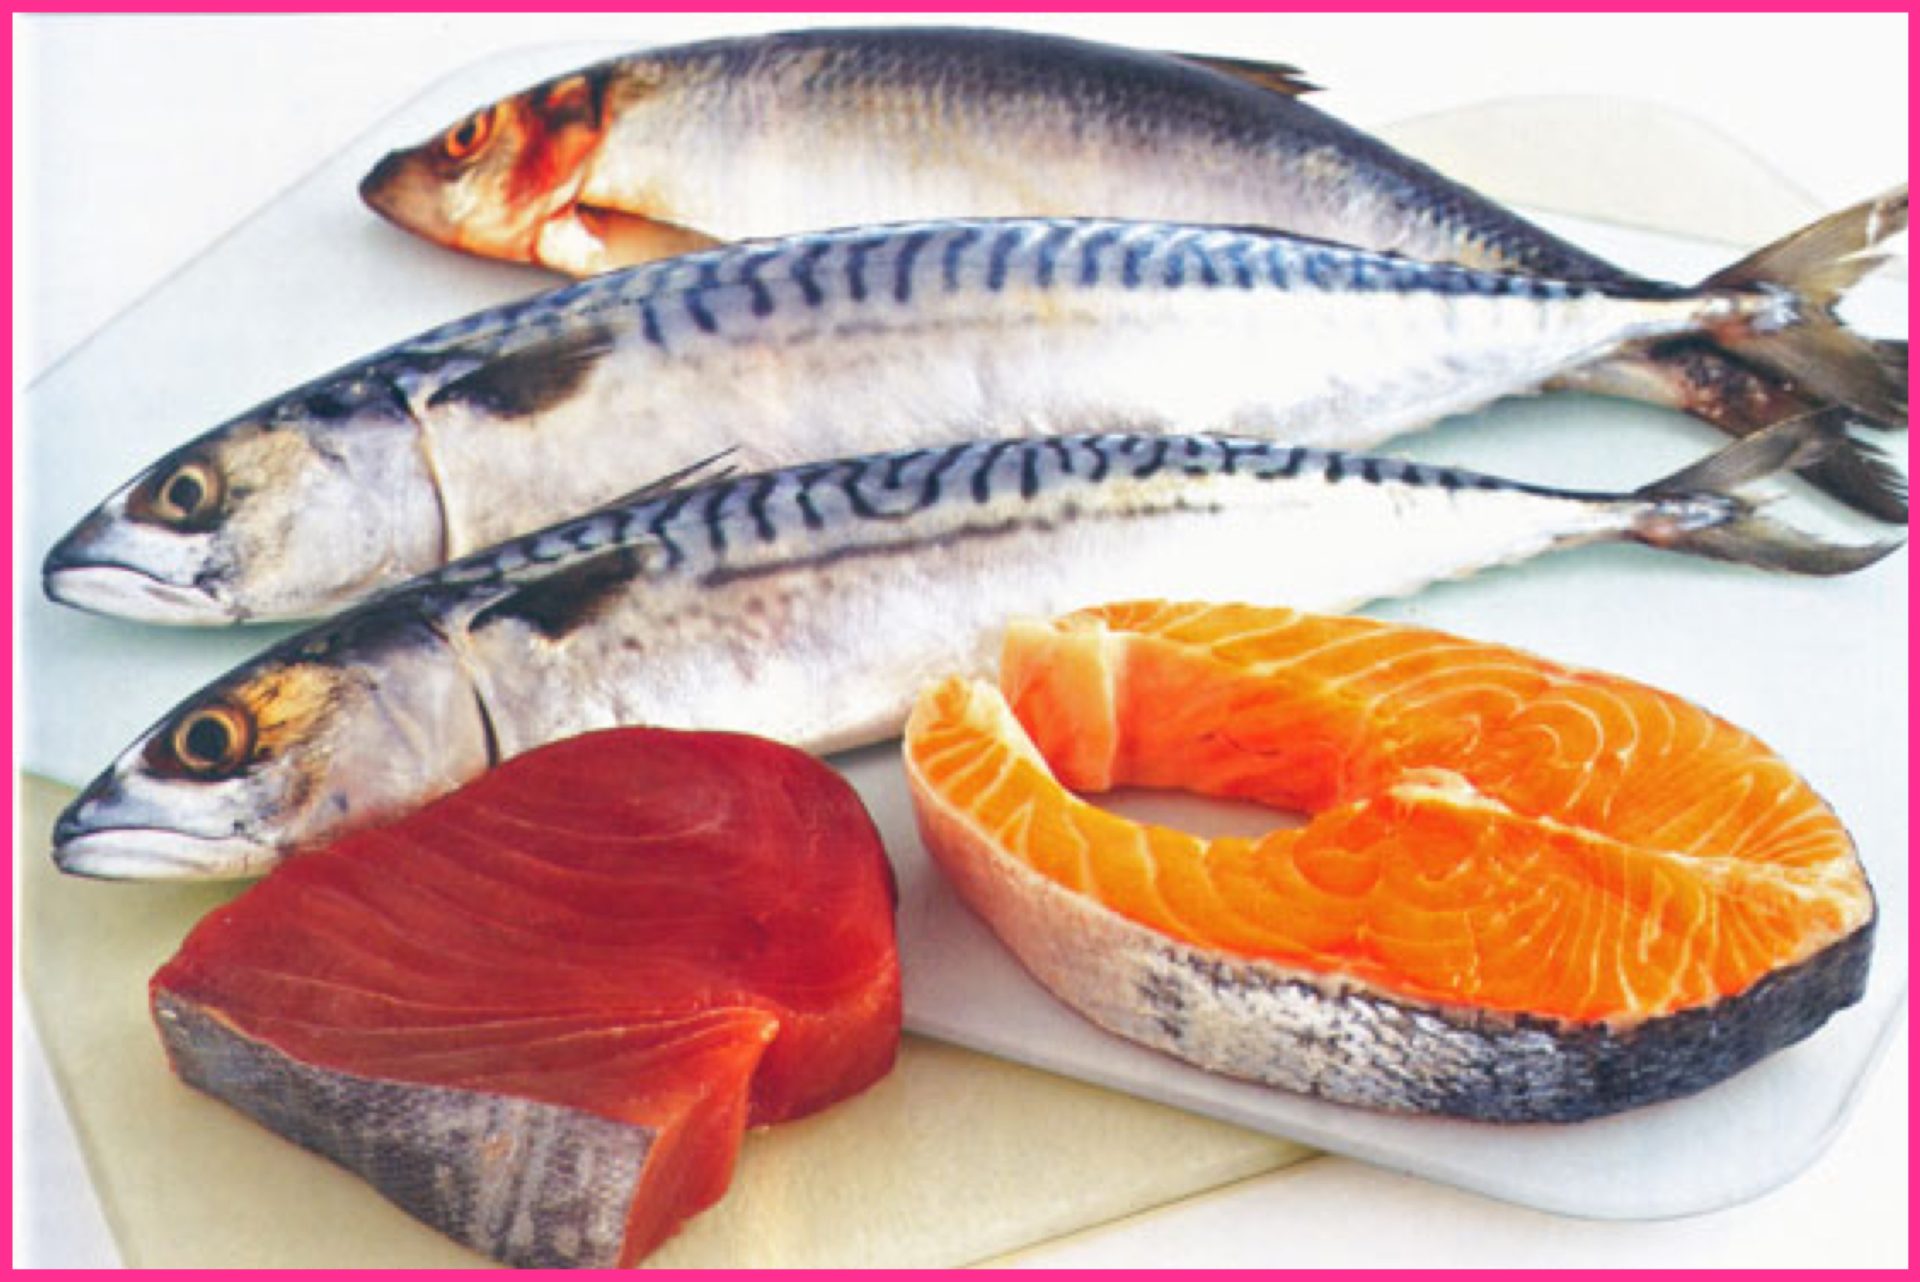 pesci ricchi di omega 3:tonno,salmone,sgombro,acciughe,trota